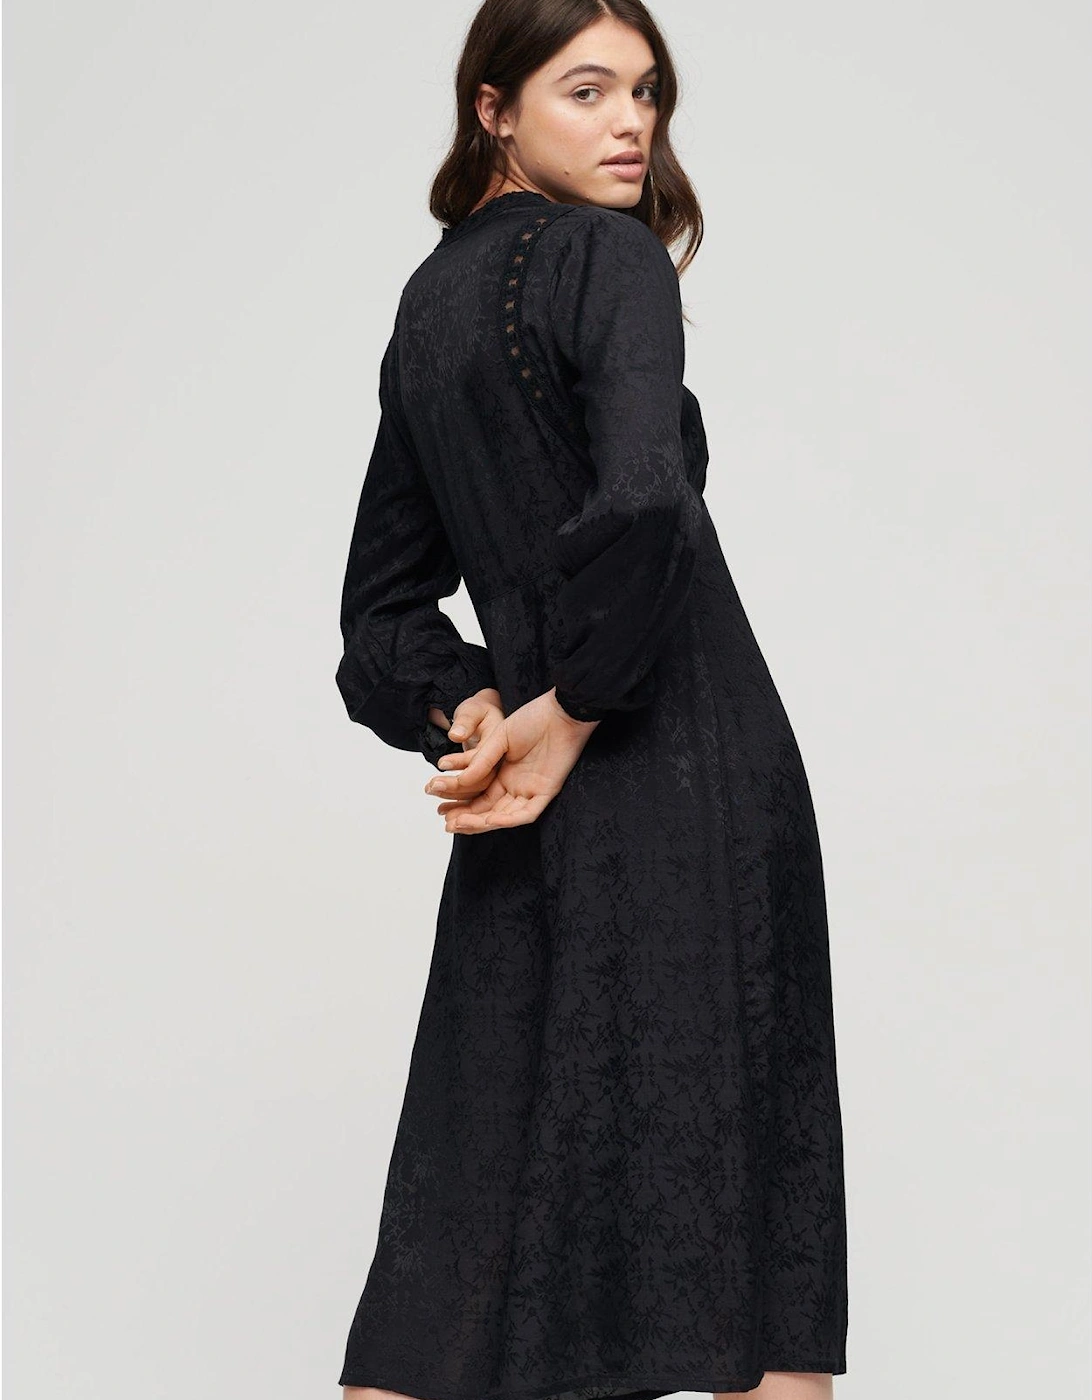 Lace Trim Midi Dress - Black